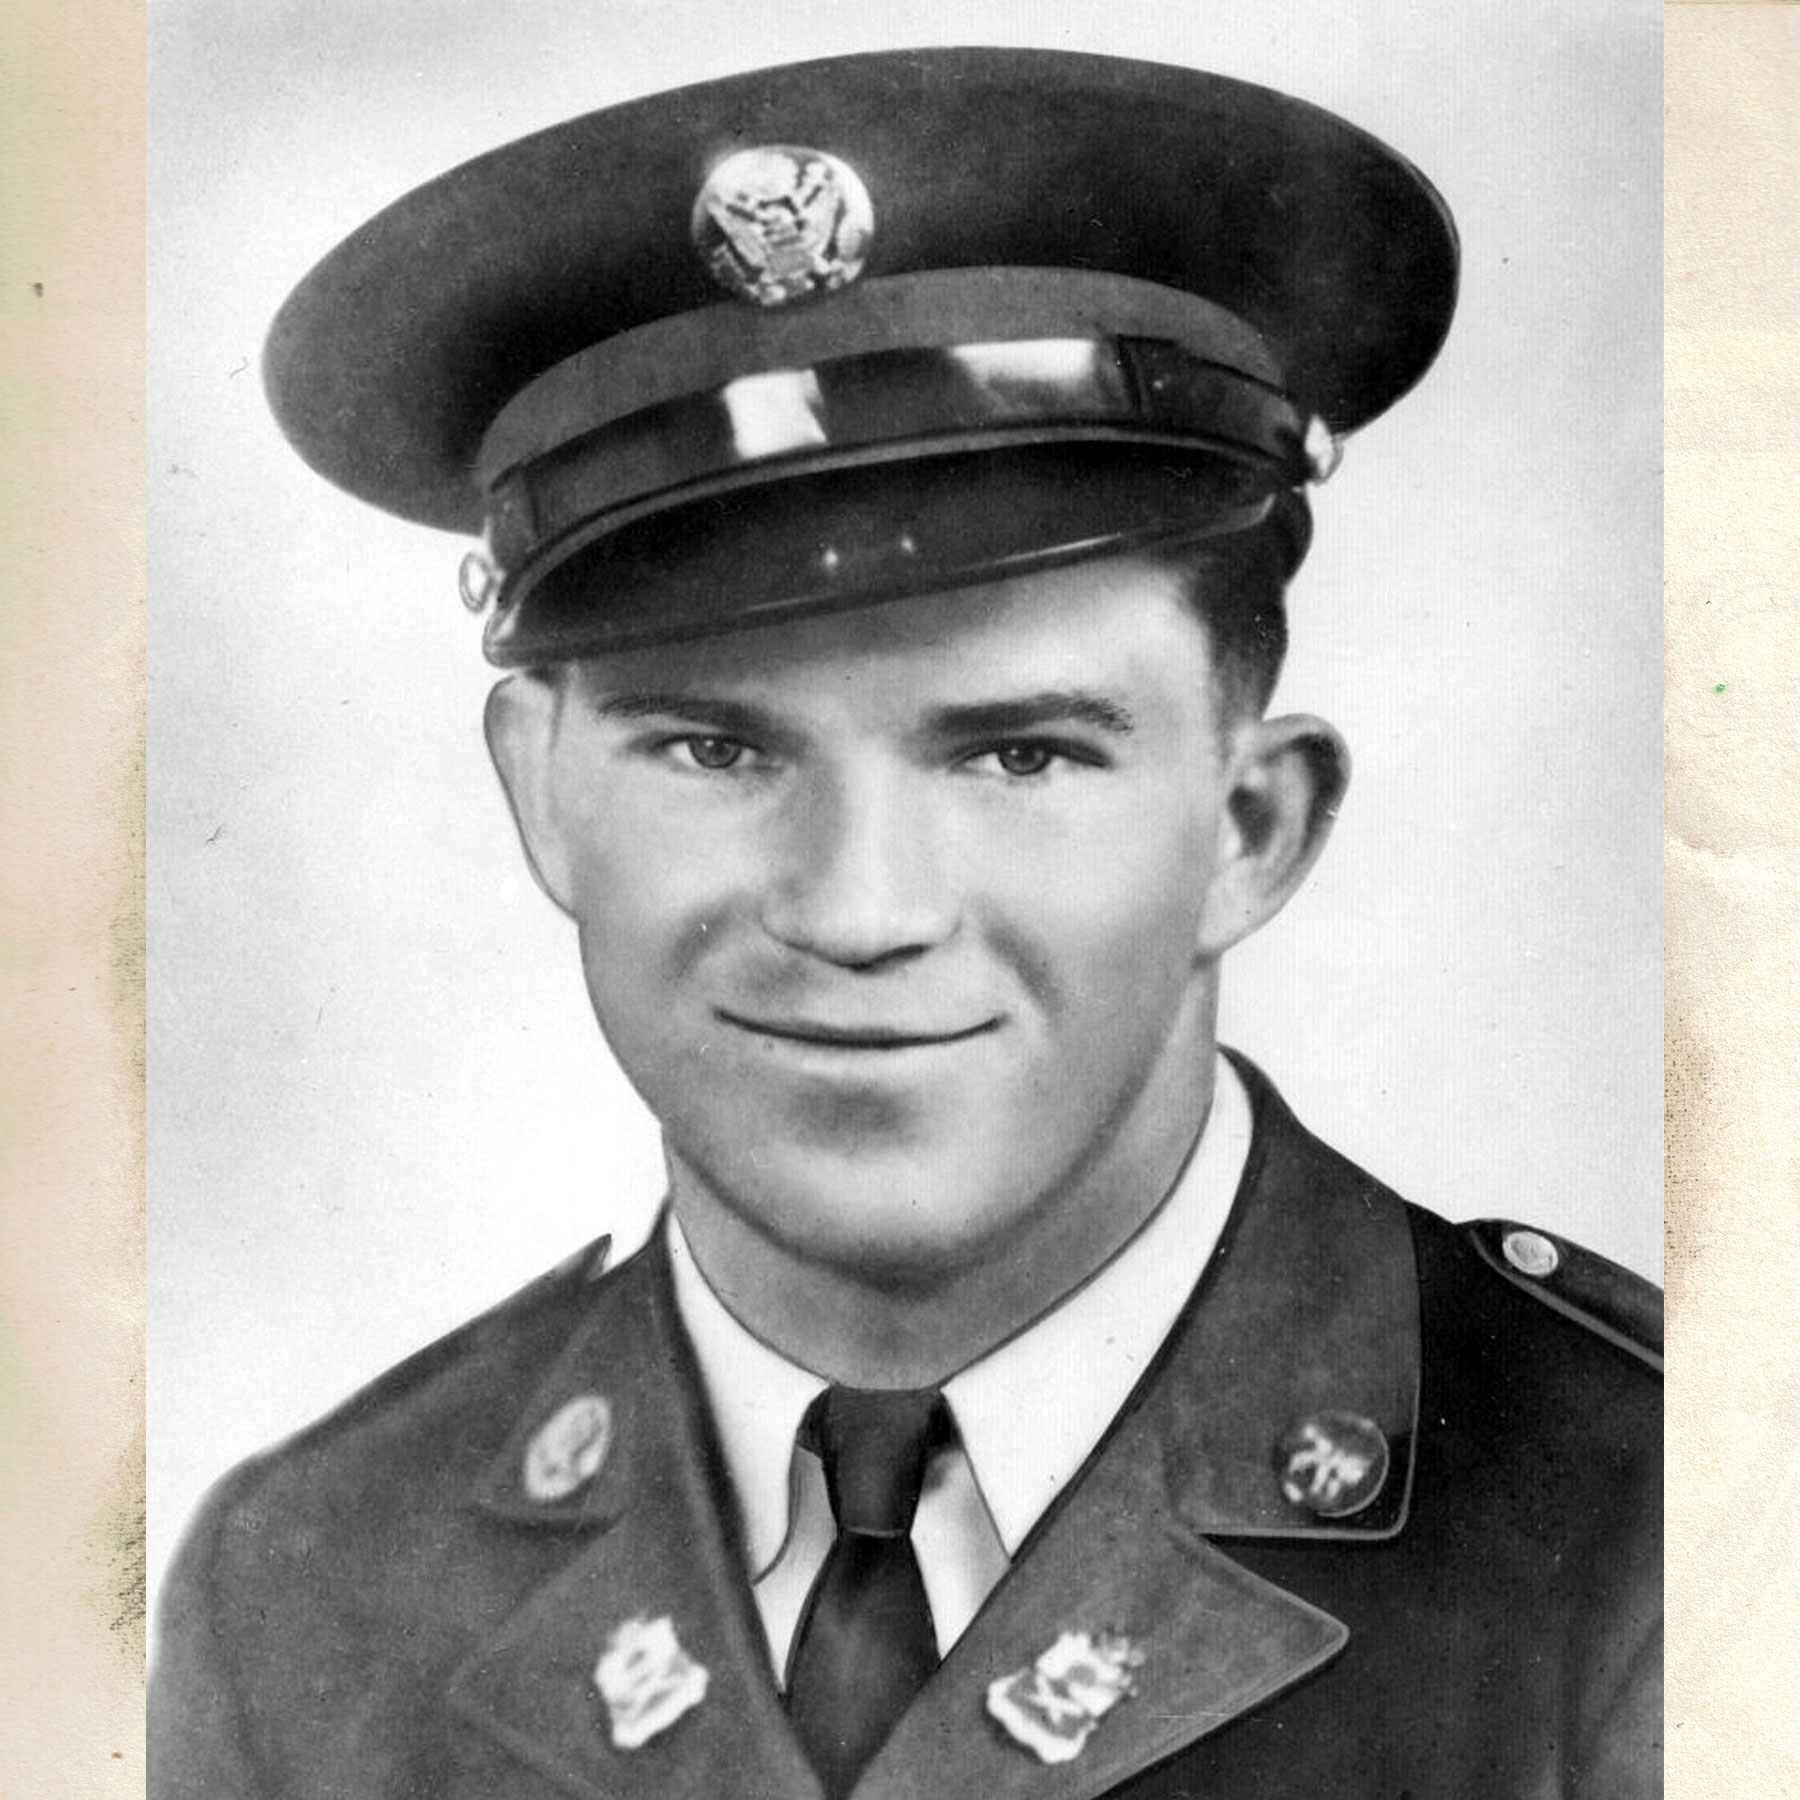 PVT Elmer E. Fryar - Medal of Honor